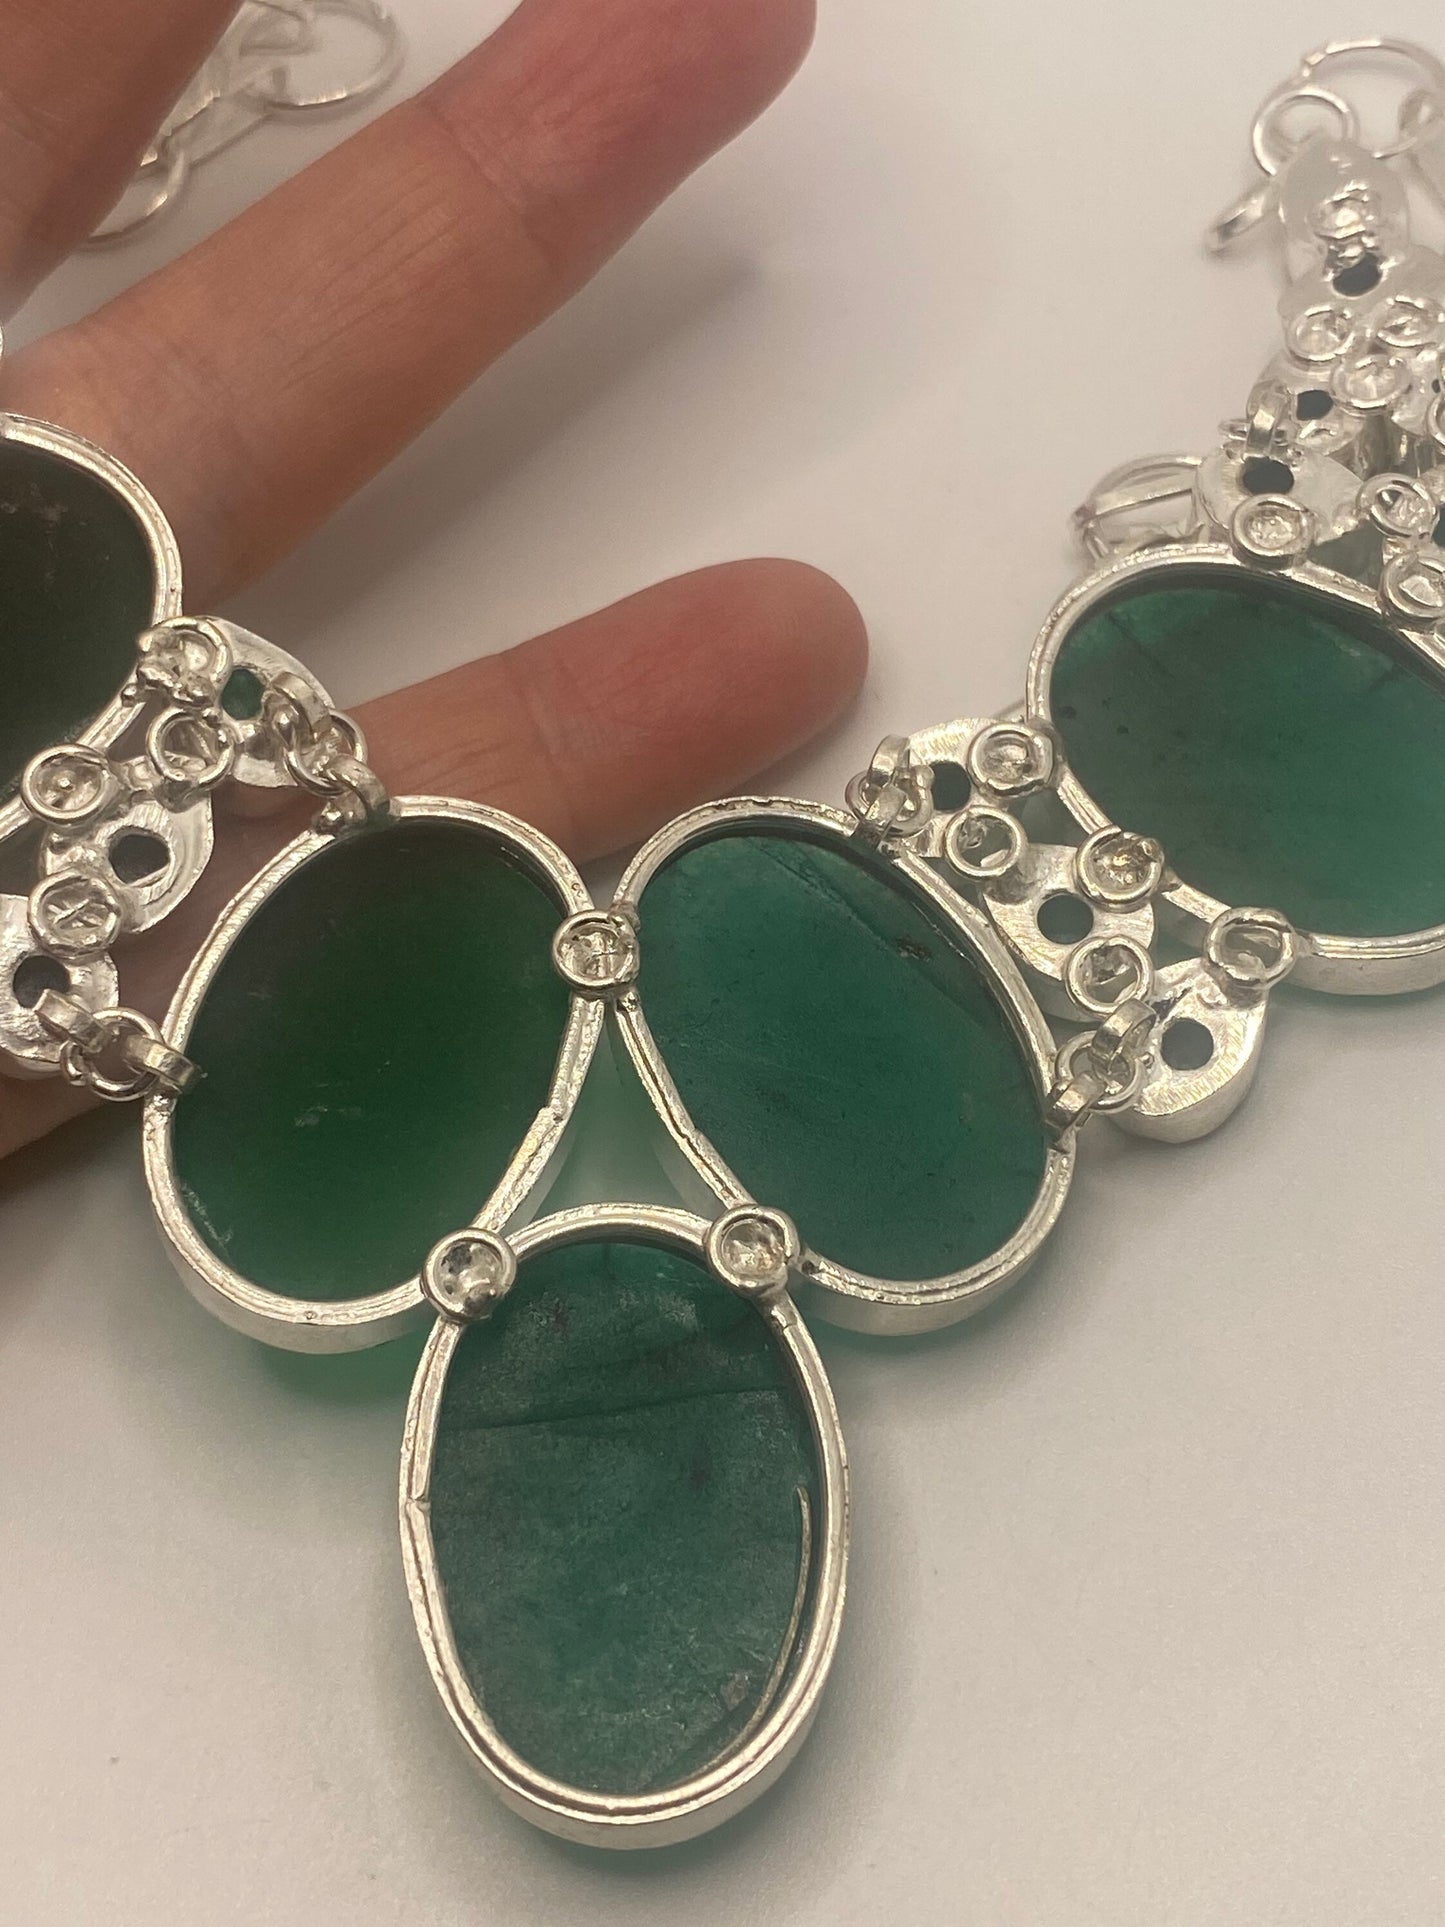 Vintage Silver Genuine Green Quartz Gemstone Statement Bib Necklace.